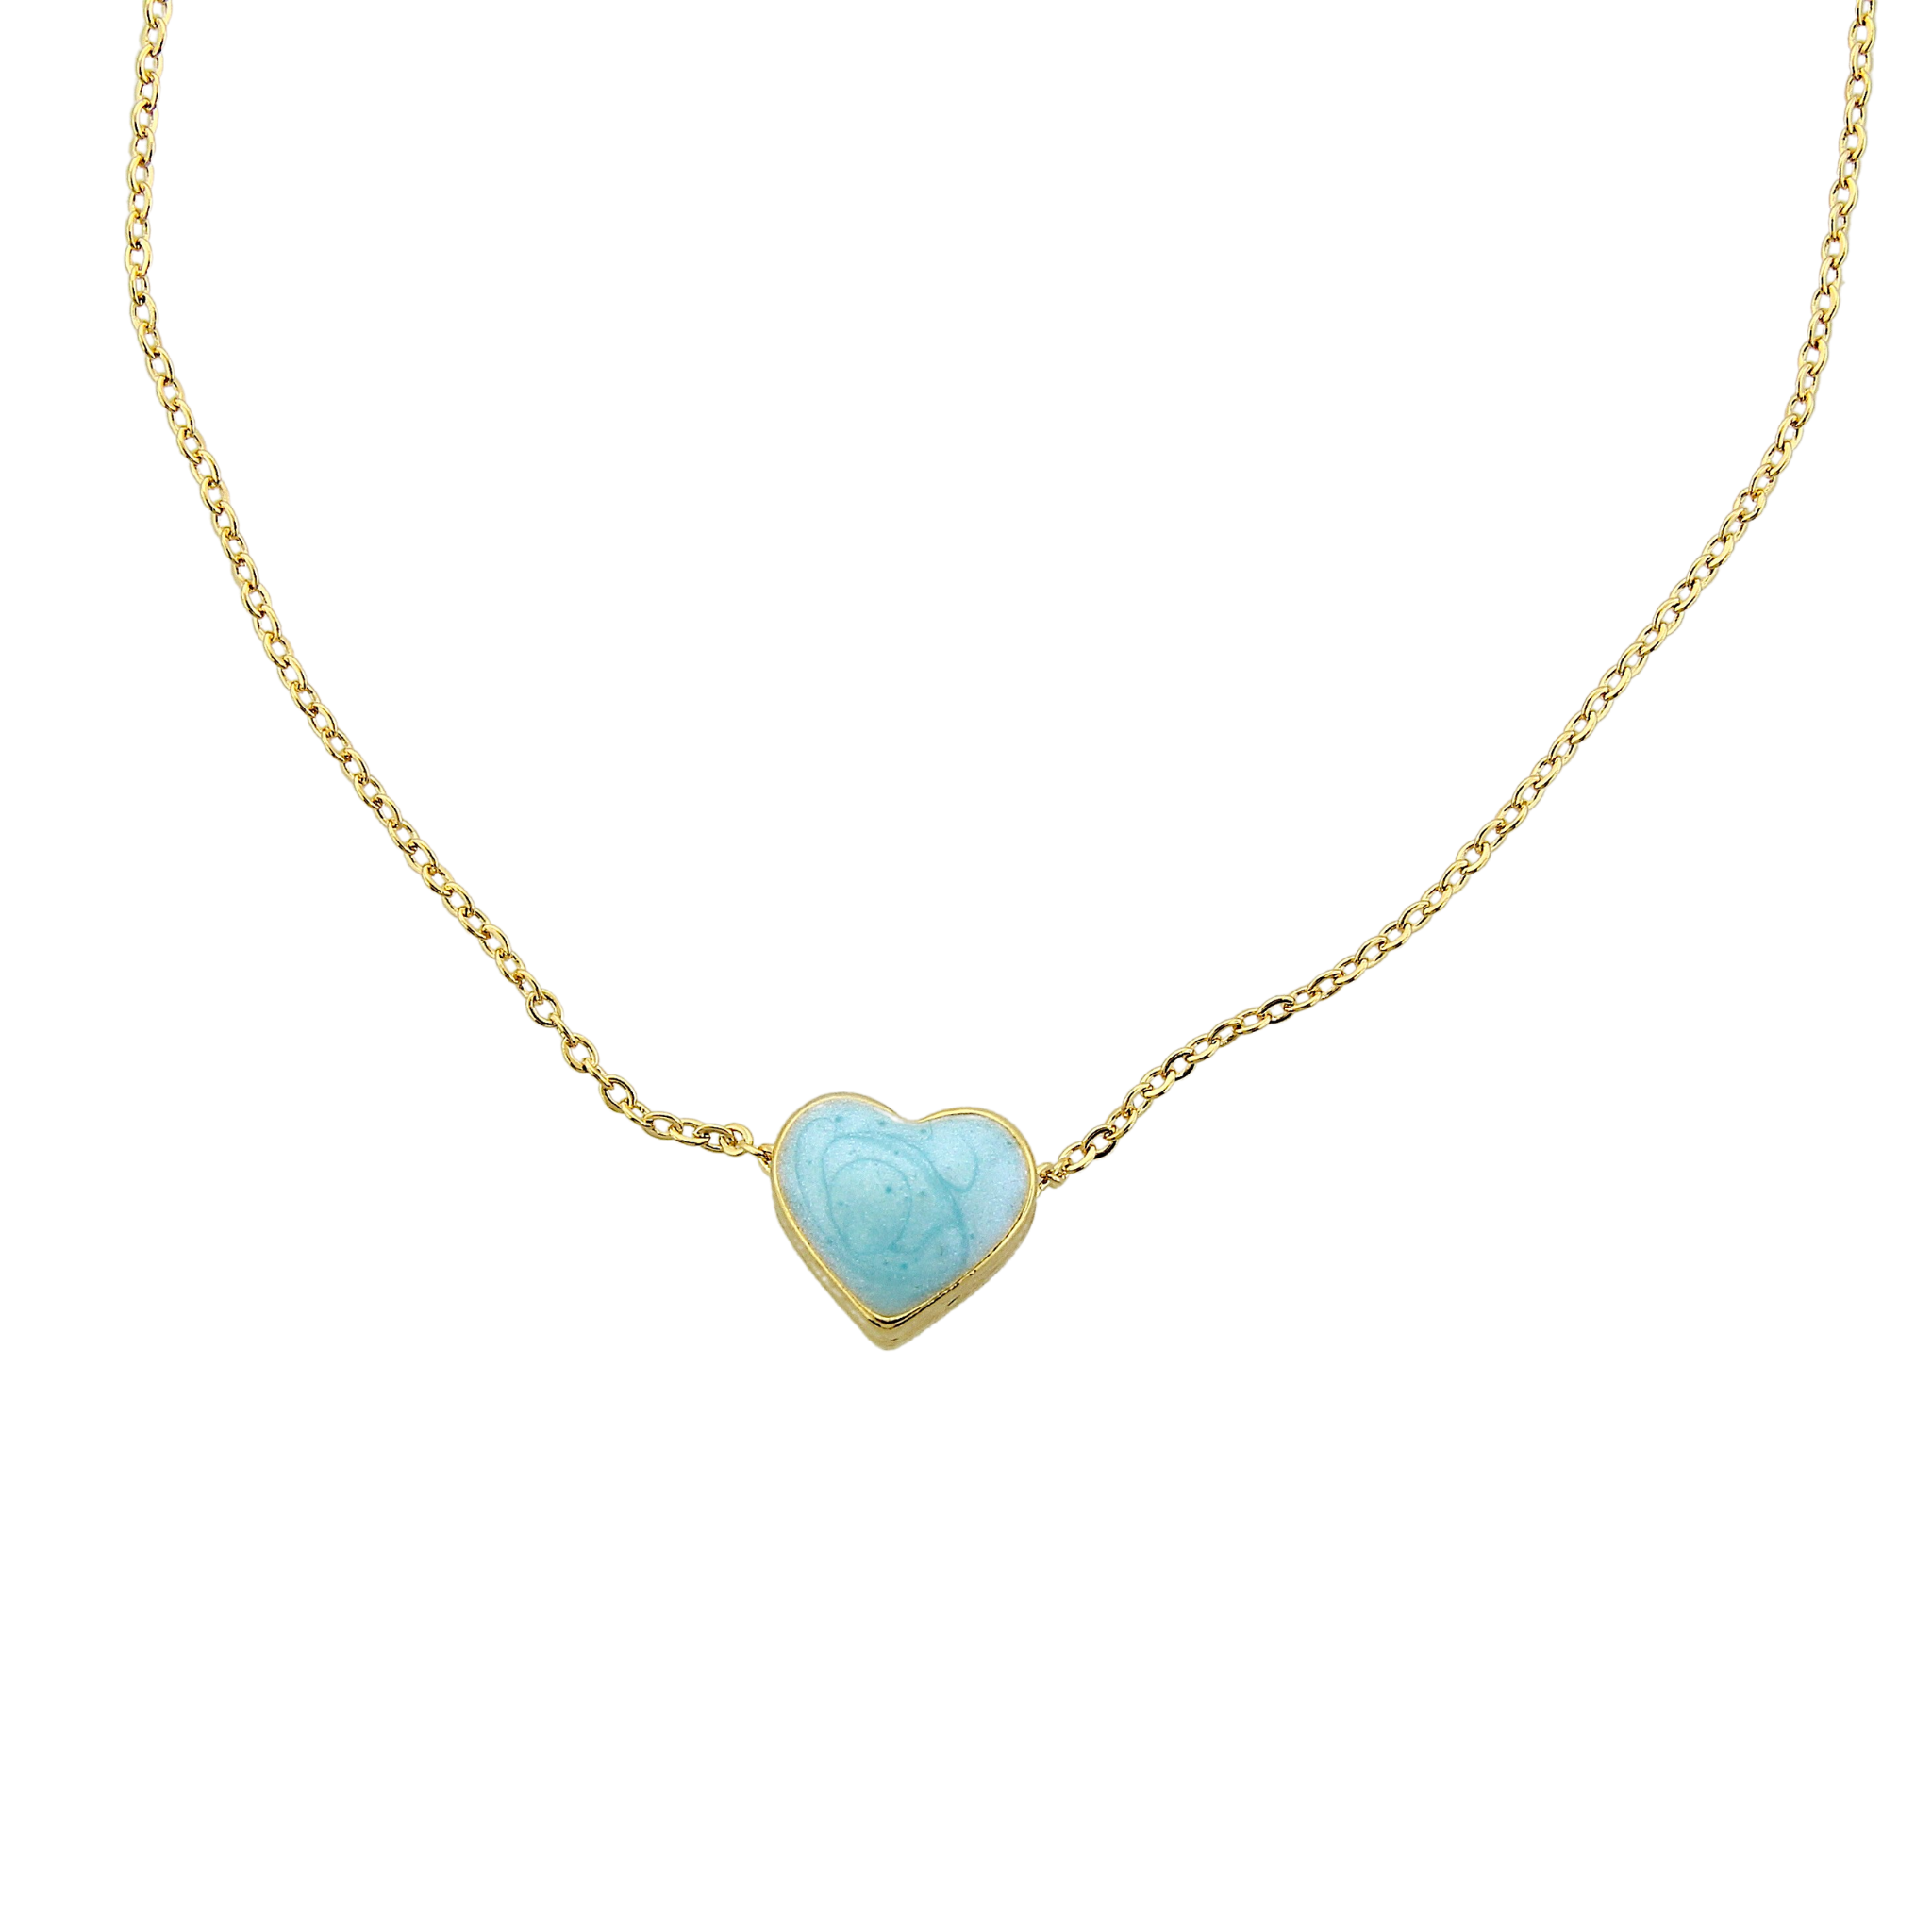 Floating Enamel Heart Necklace - Turquoise